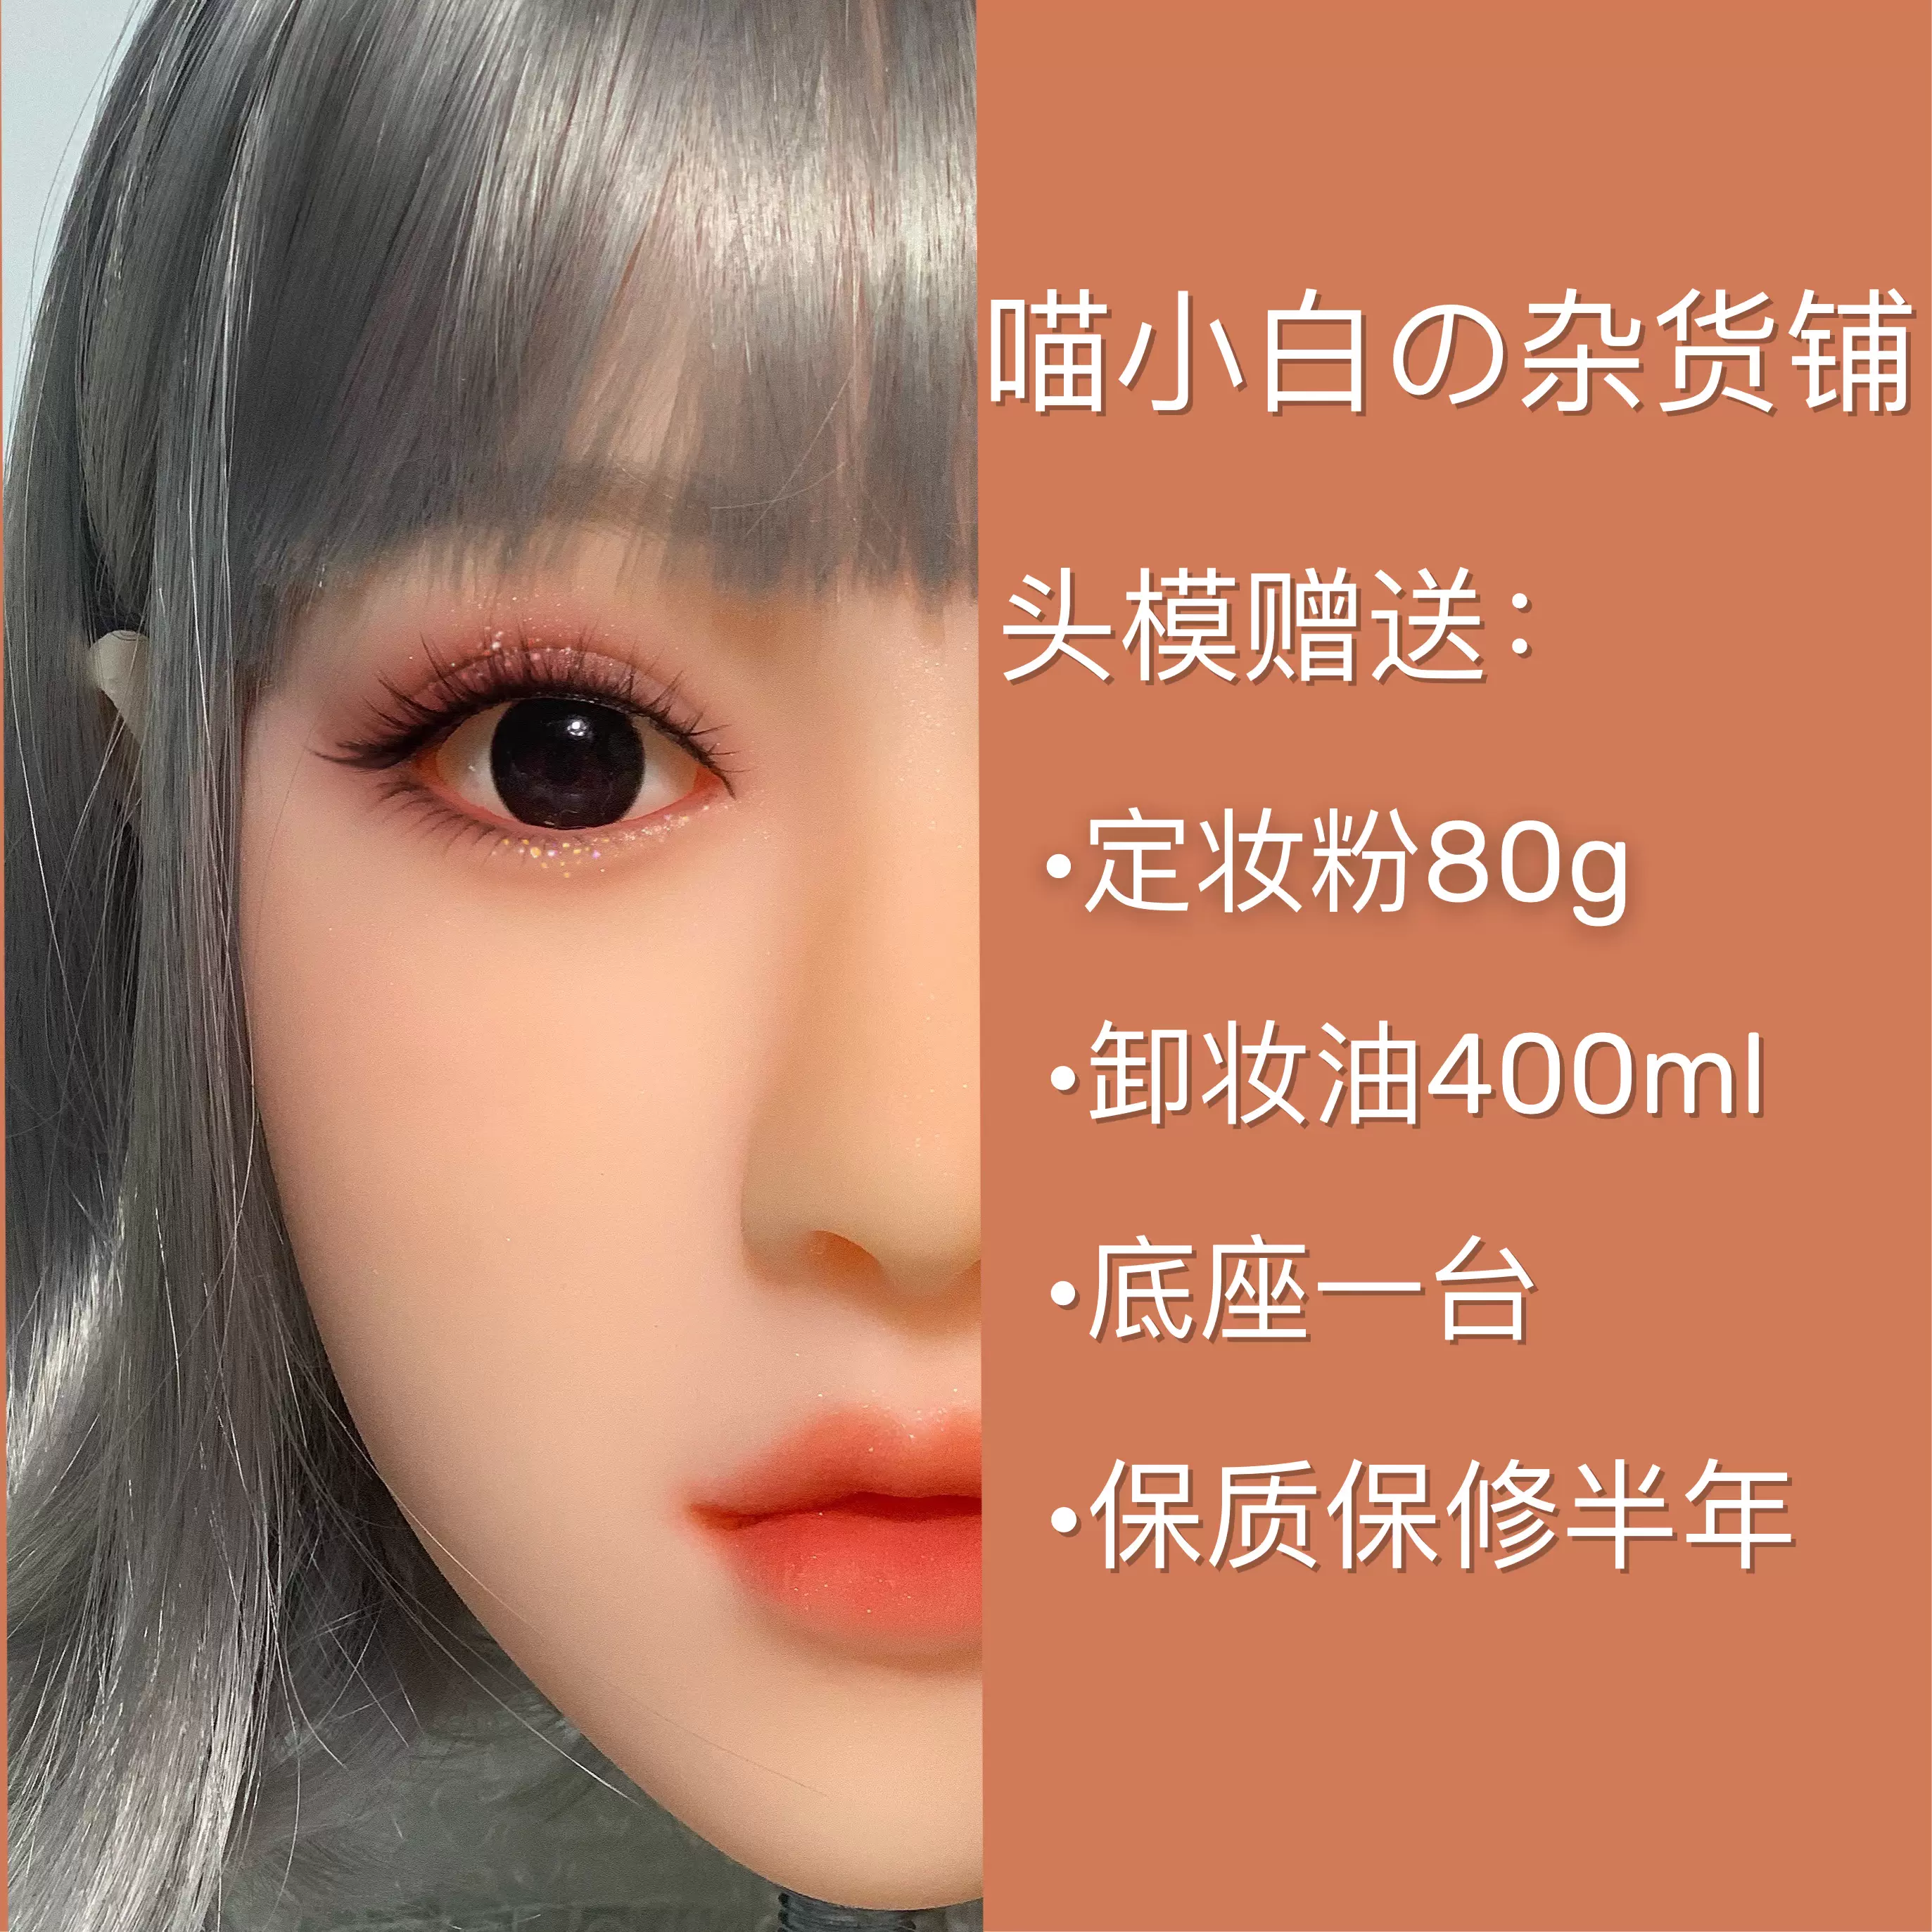 化妆师专用彩妆头模假人头模仿真皮材质反复使用练习各类妆容- Taobao